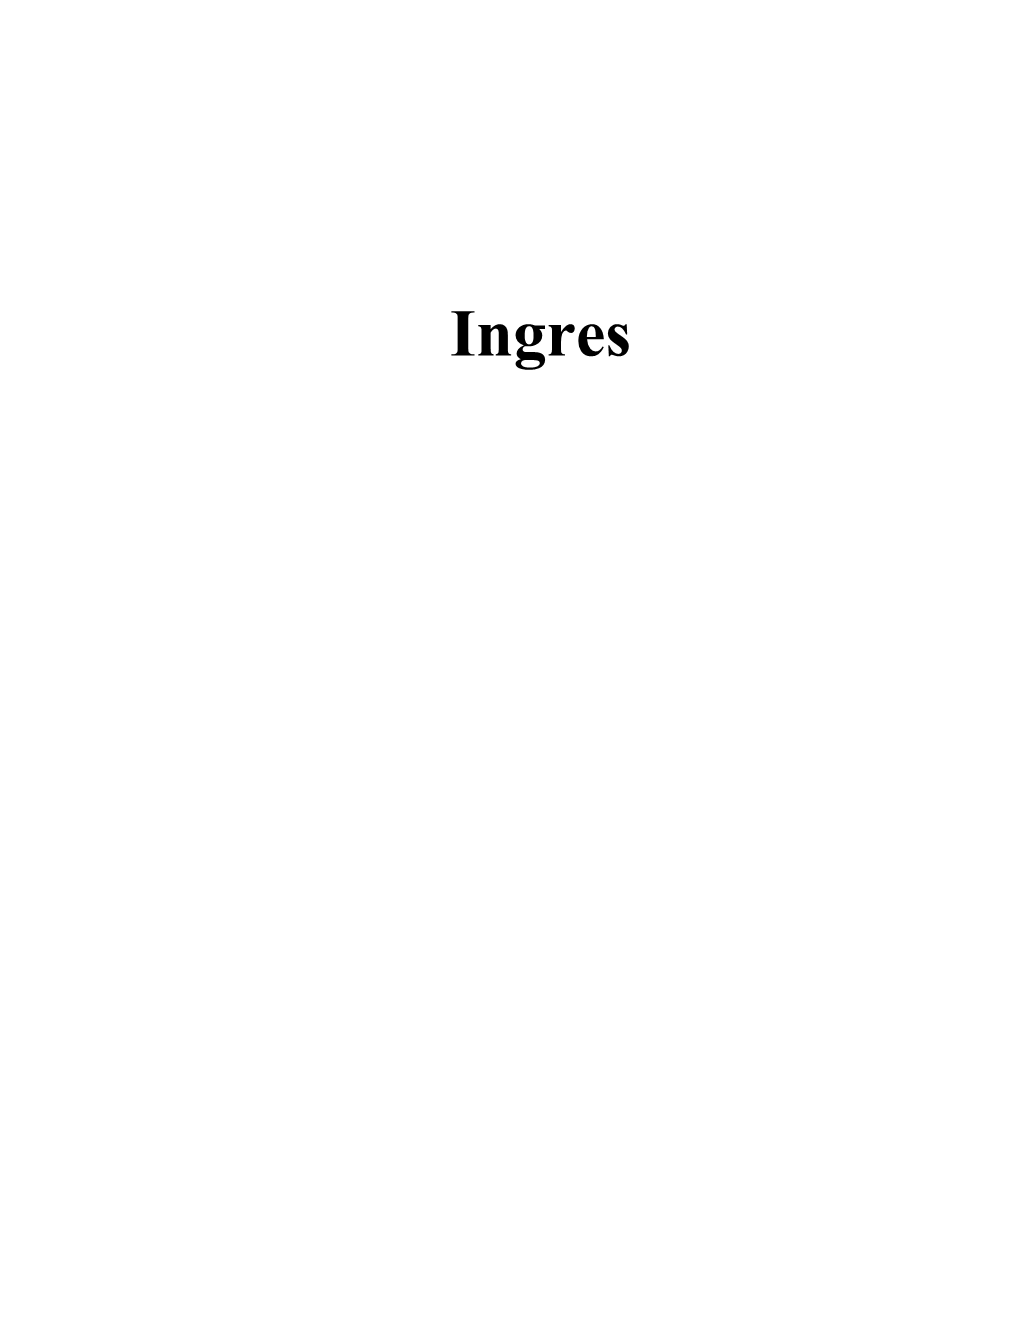 Use of Ingres